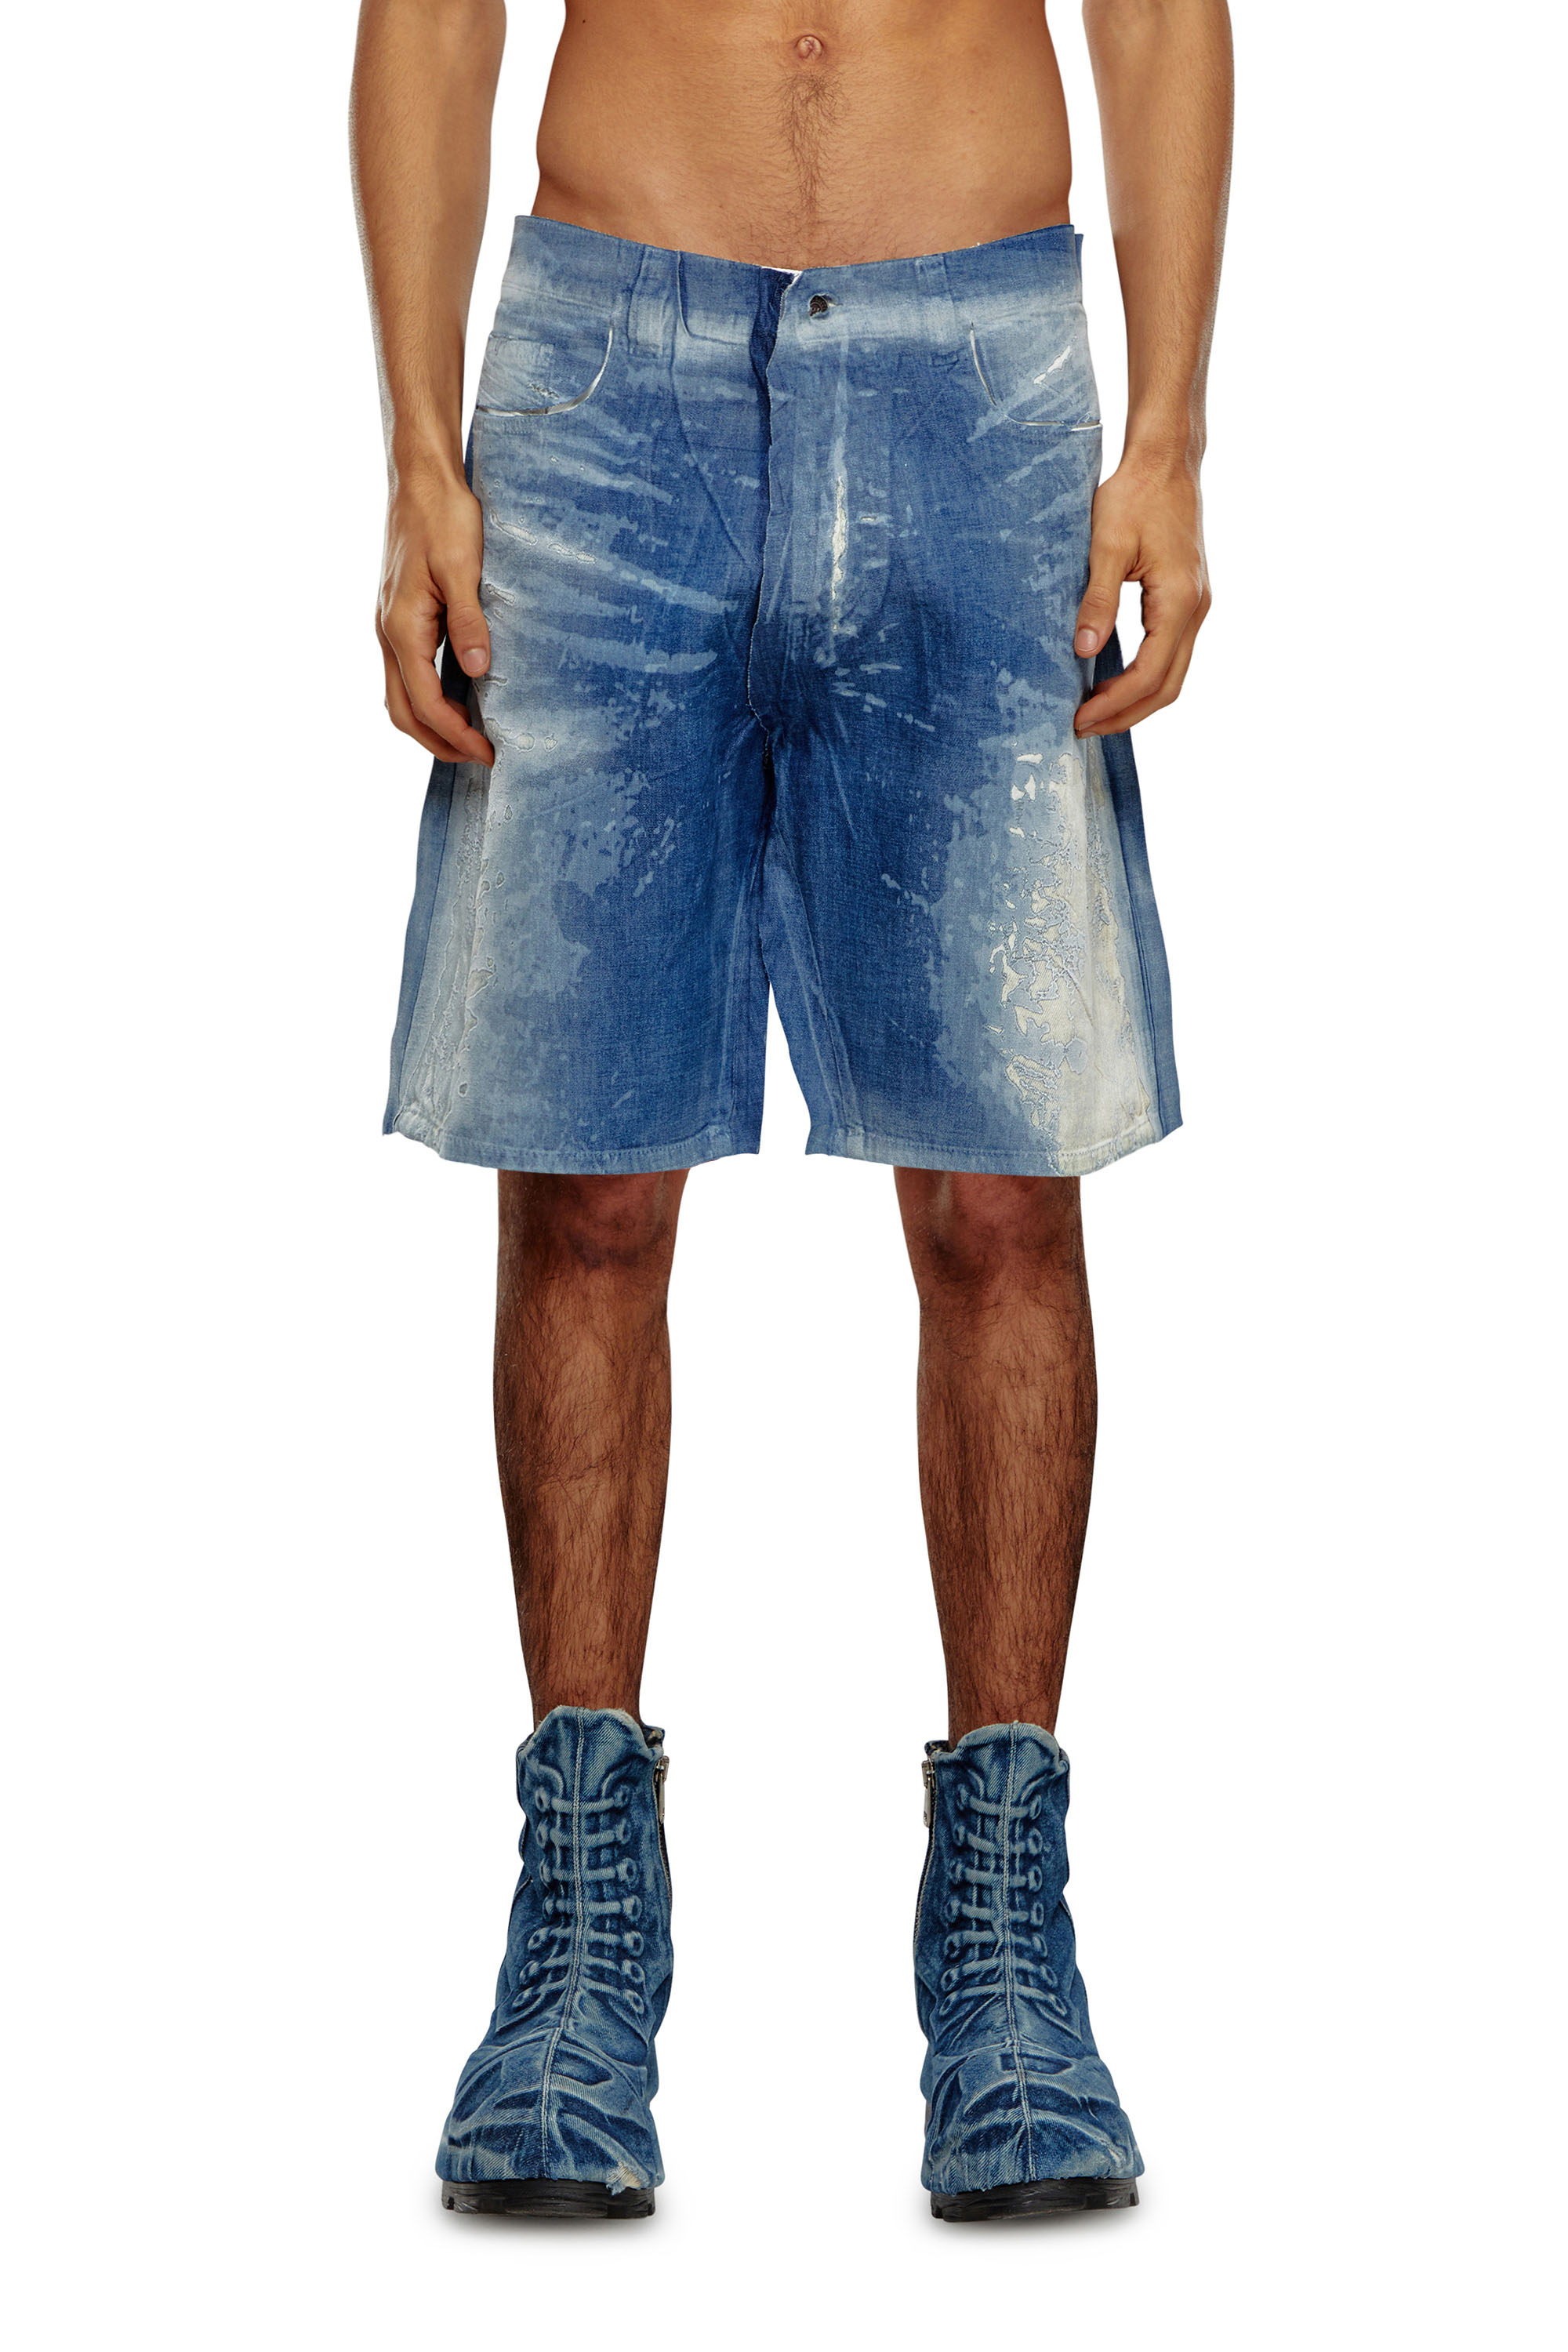 Diesel - Pantalones cortos en denim despegado - Shorts - Hombre - Azul marino